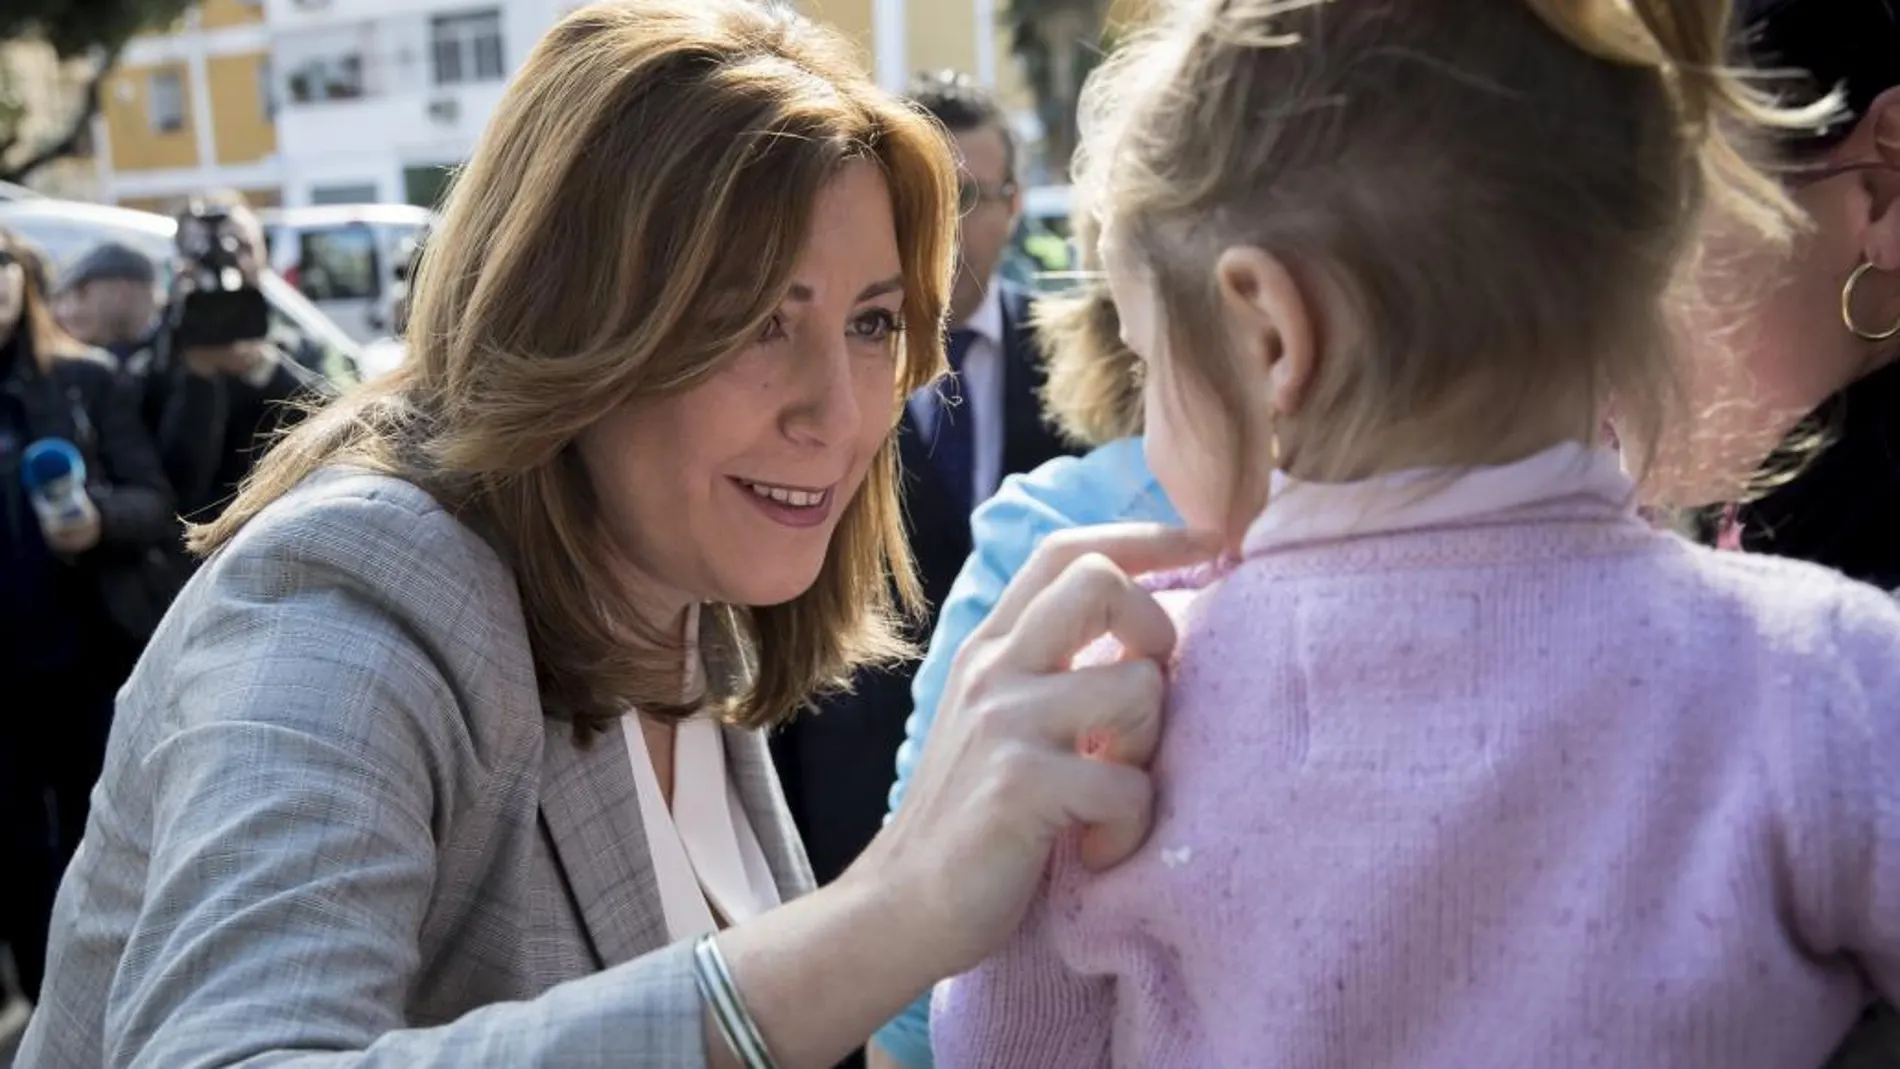 La presidenta andaluza, Susana Díaz, saluda a una niña durante su visita hoy al centro de Servicios Sociales de la localidad sevillana de San José de la Rinconada